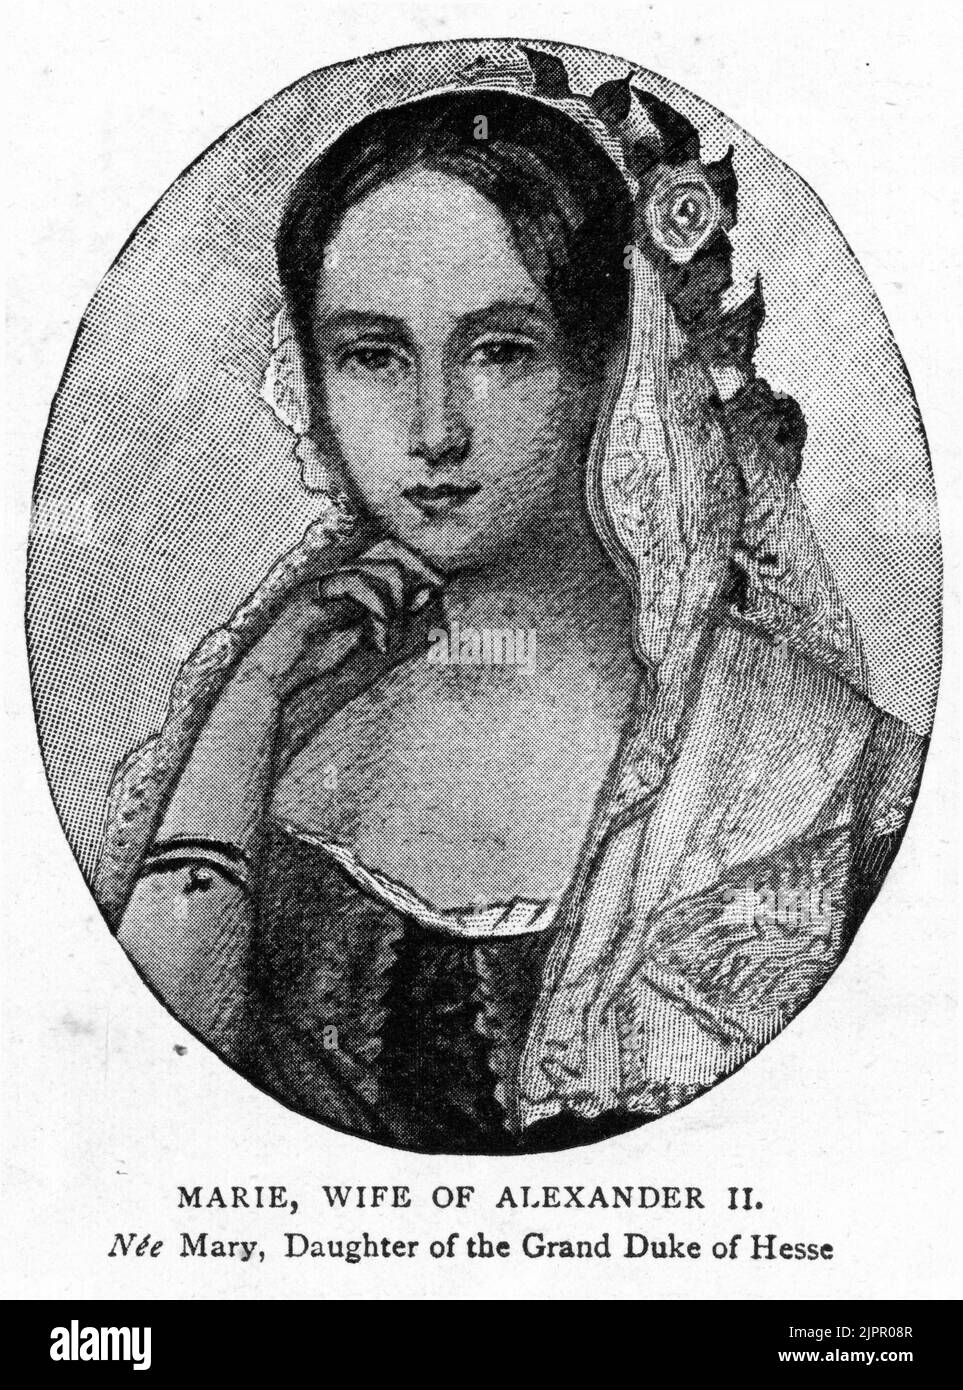 María Alexandrovna, nacida la princesa María de Hesse y por el Rin (1824 – 1880), emperatriz de Rusia como la primera esposa y consejero político del emperador Alejandro II Foto de stock